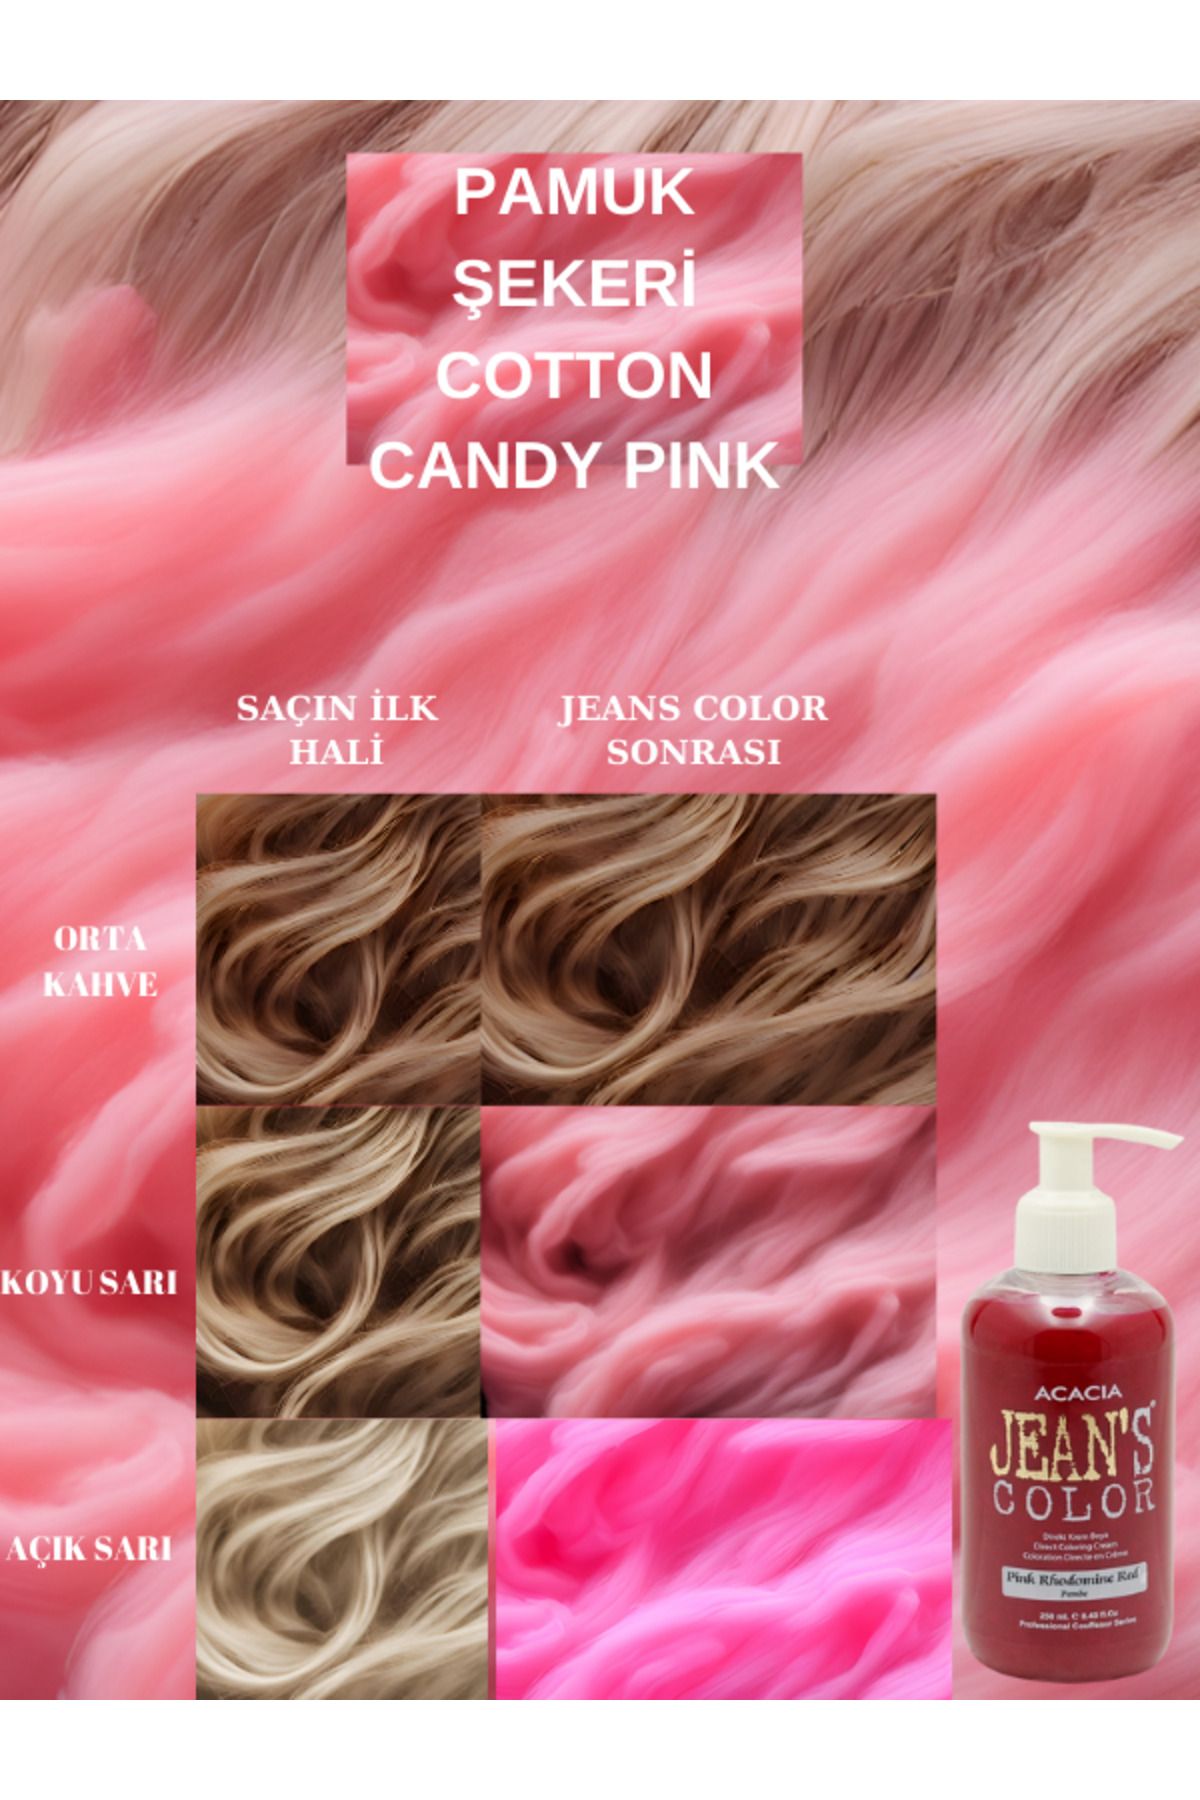 jeans color Amonyaksız Renkli Saç Boyası Pamuk Şekeri Pembe 250ml. Kokusuz Su Bazlı Cotton Candy Pınk Hair Dye